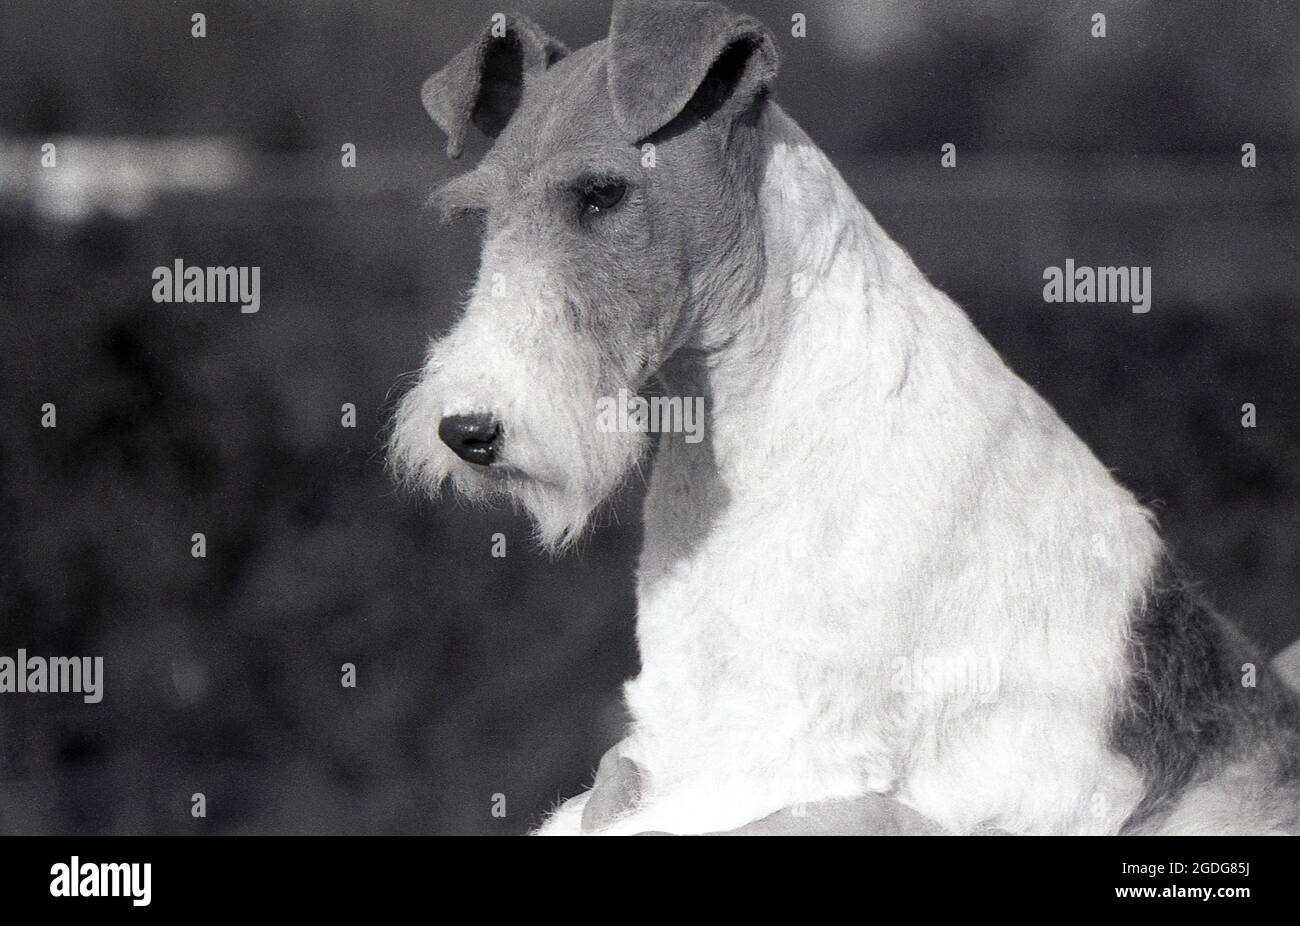 1955, histórico, retrato de un perro del espectáculo premiado, un terrier del zorro del alambre, Inglaterra, Reino Unido. Con su aspecto distintivo, su pelaje y sus características expresivas, The Wire ha sido históricamente un perro de muestra de éxito y una presencia popular en las películas y la televisión. Un perro amistoso, venidero e intrépido, en Inglaterra, desde 1870s, Wire y Smooth Fox Terriers han sido reconocidos como razas separadas, a diferencia de los Estados Unidos, cuando no fueron reconocidas como razas distintas hasta 1985. Foto de stock